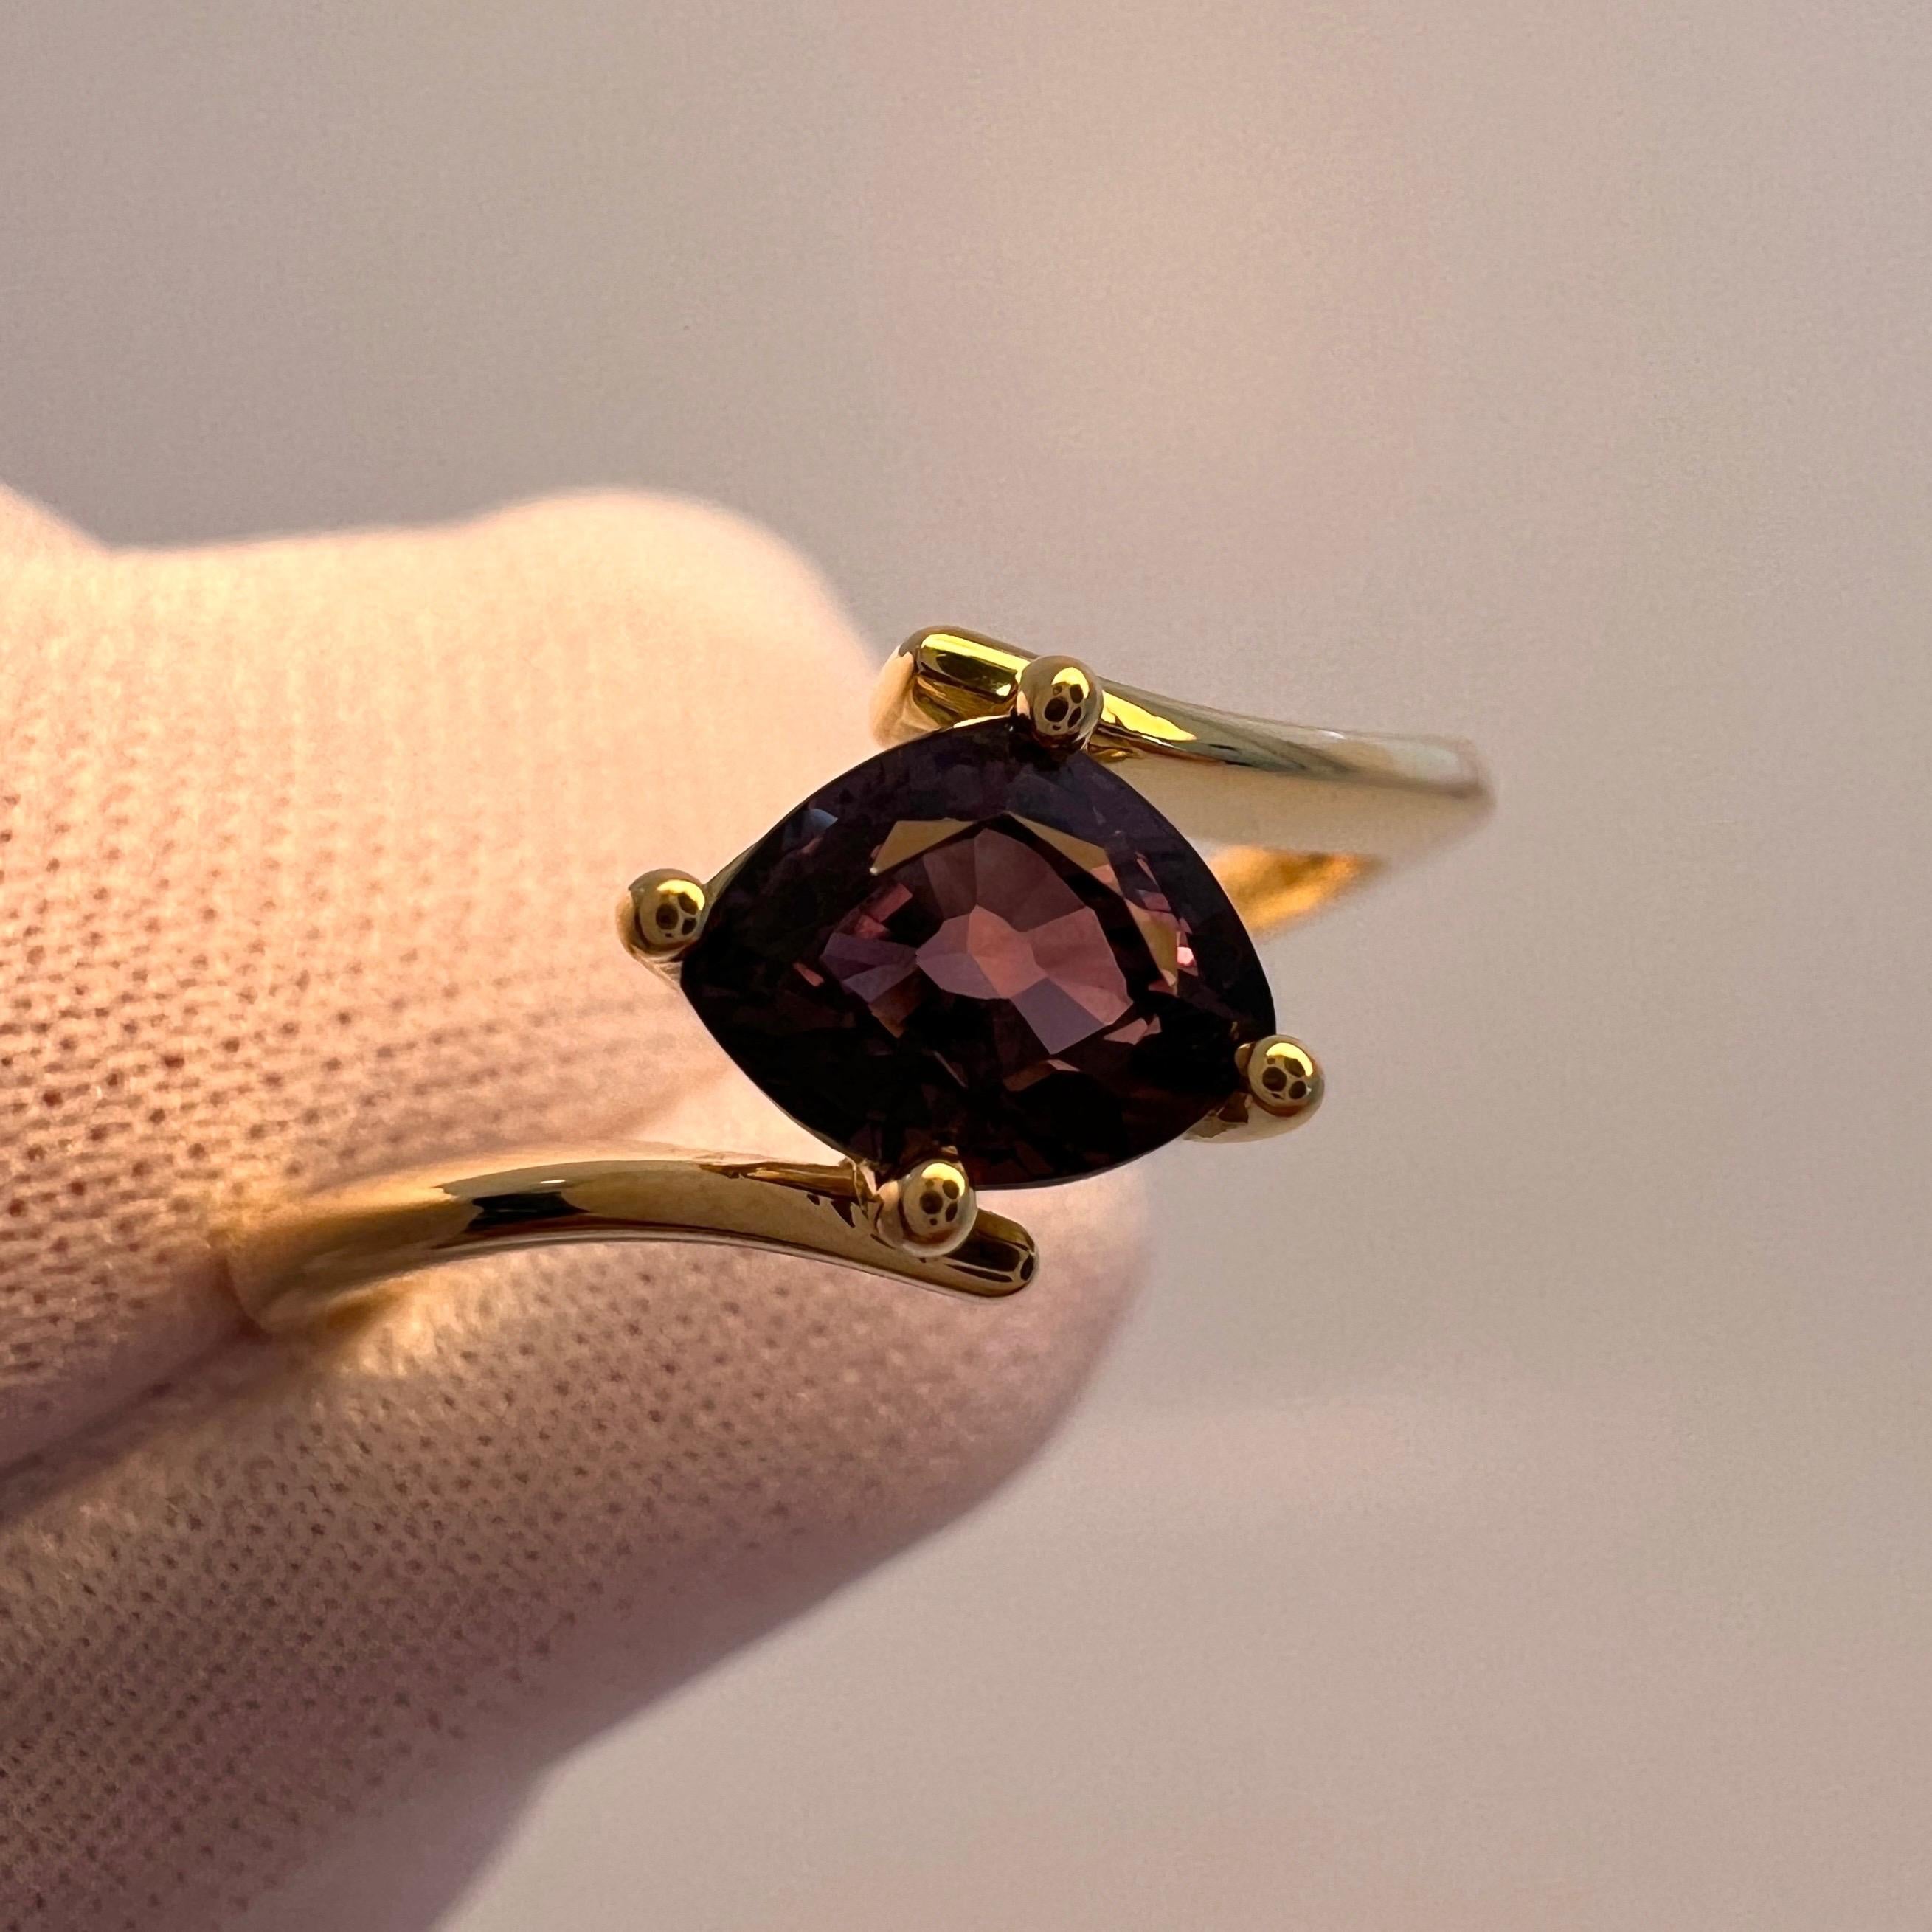 IGI Certified Fancy Colour Change Untreated Sapphire 18k Yellow Gold Solitaire Ring.

Saphir de 1,07 carat avec un effet de changement de couleur rare et unique. Entièrement certifié par IGI comme étant naturel, non traité et avec changement de